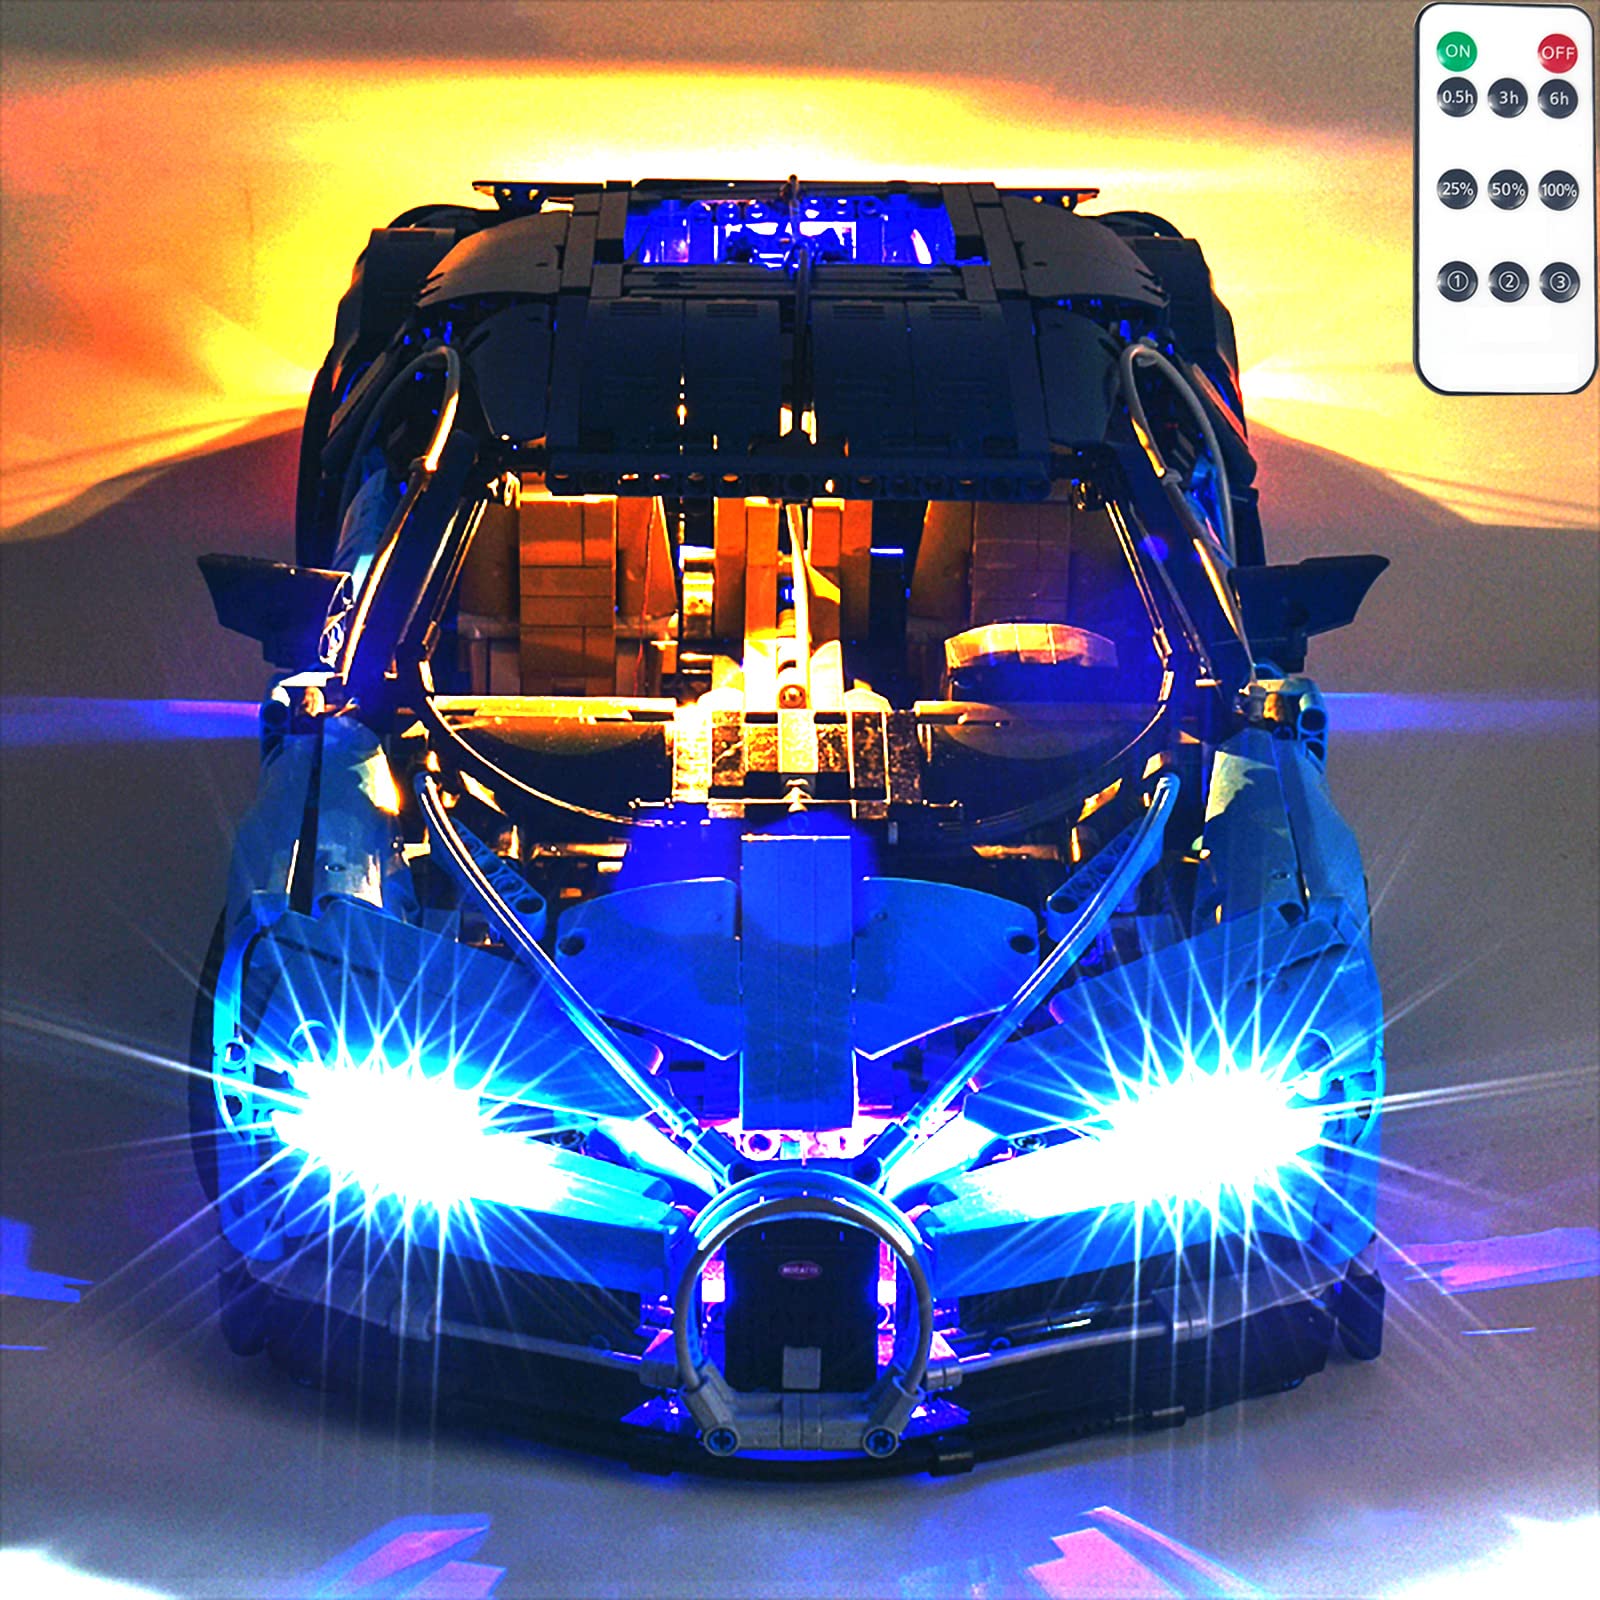 LED Beleuchtungsset für Lego Bugatti Chiron 42083 Modell, mit Fernbedienung, Licht Set Kompatibel Mit Lego 42083 Bugatti Chiron Bausteinen Modell(Nicht Enthalten Modell)